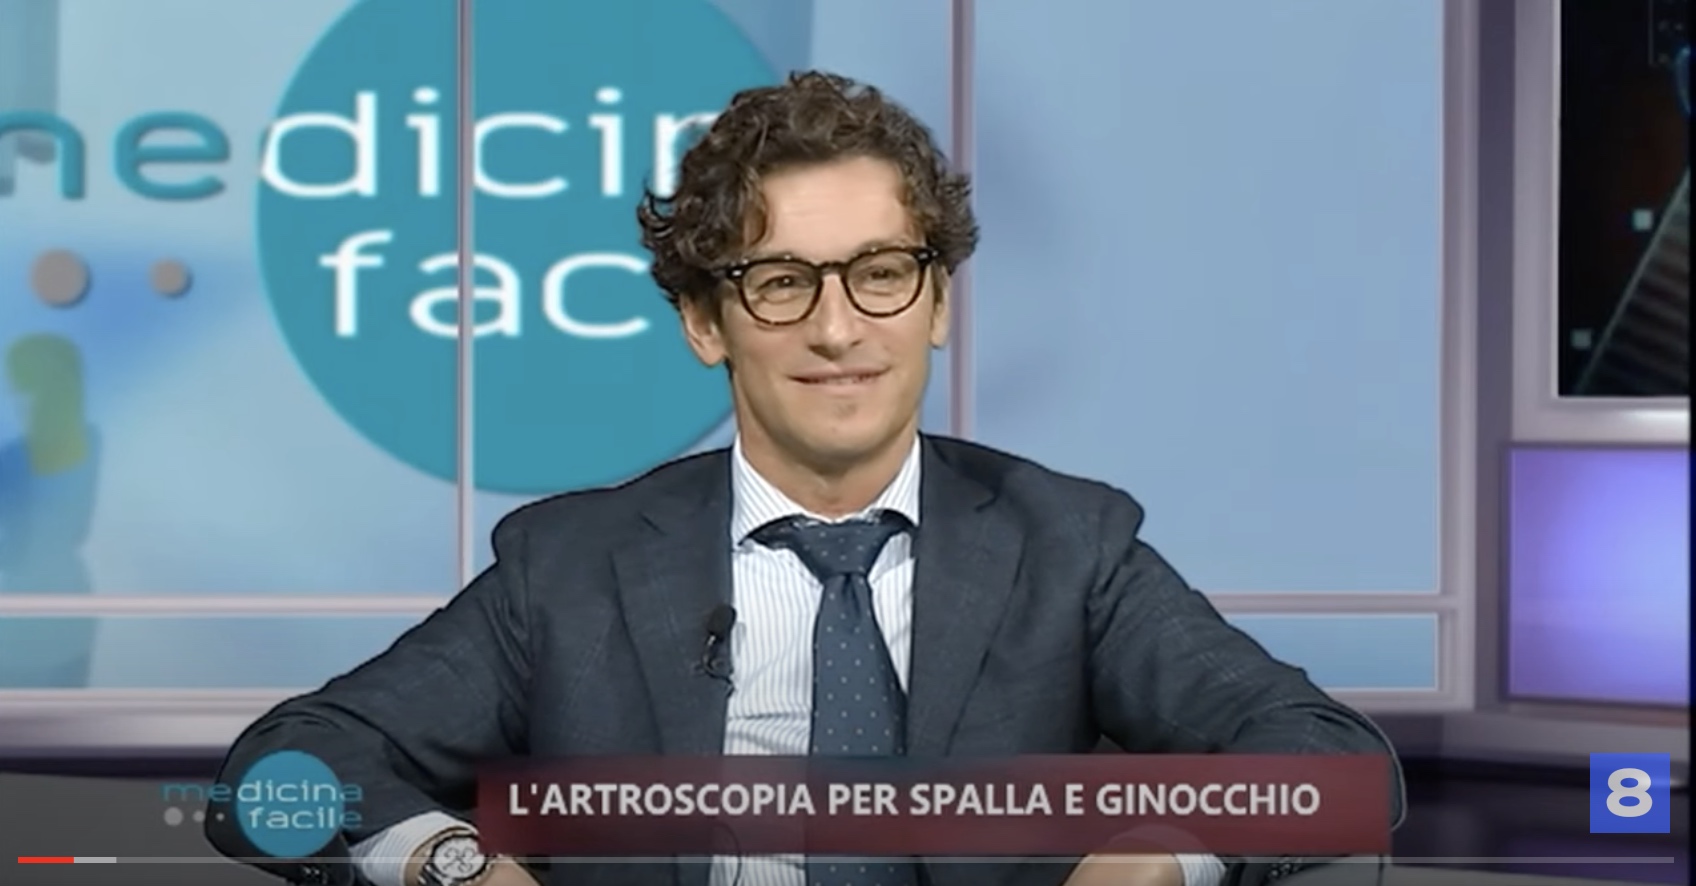 Intervista al Dr. Gabriele Tavolieri durante la trasmissione televisiva di Rete8.